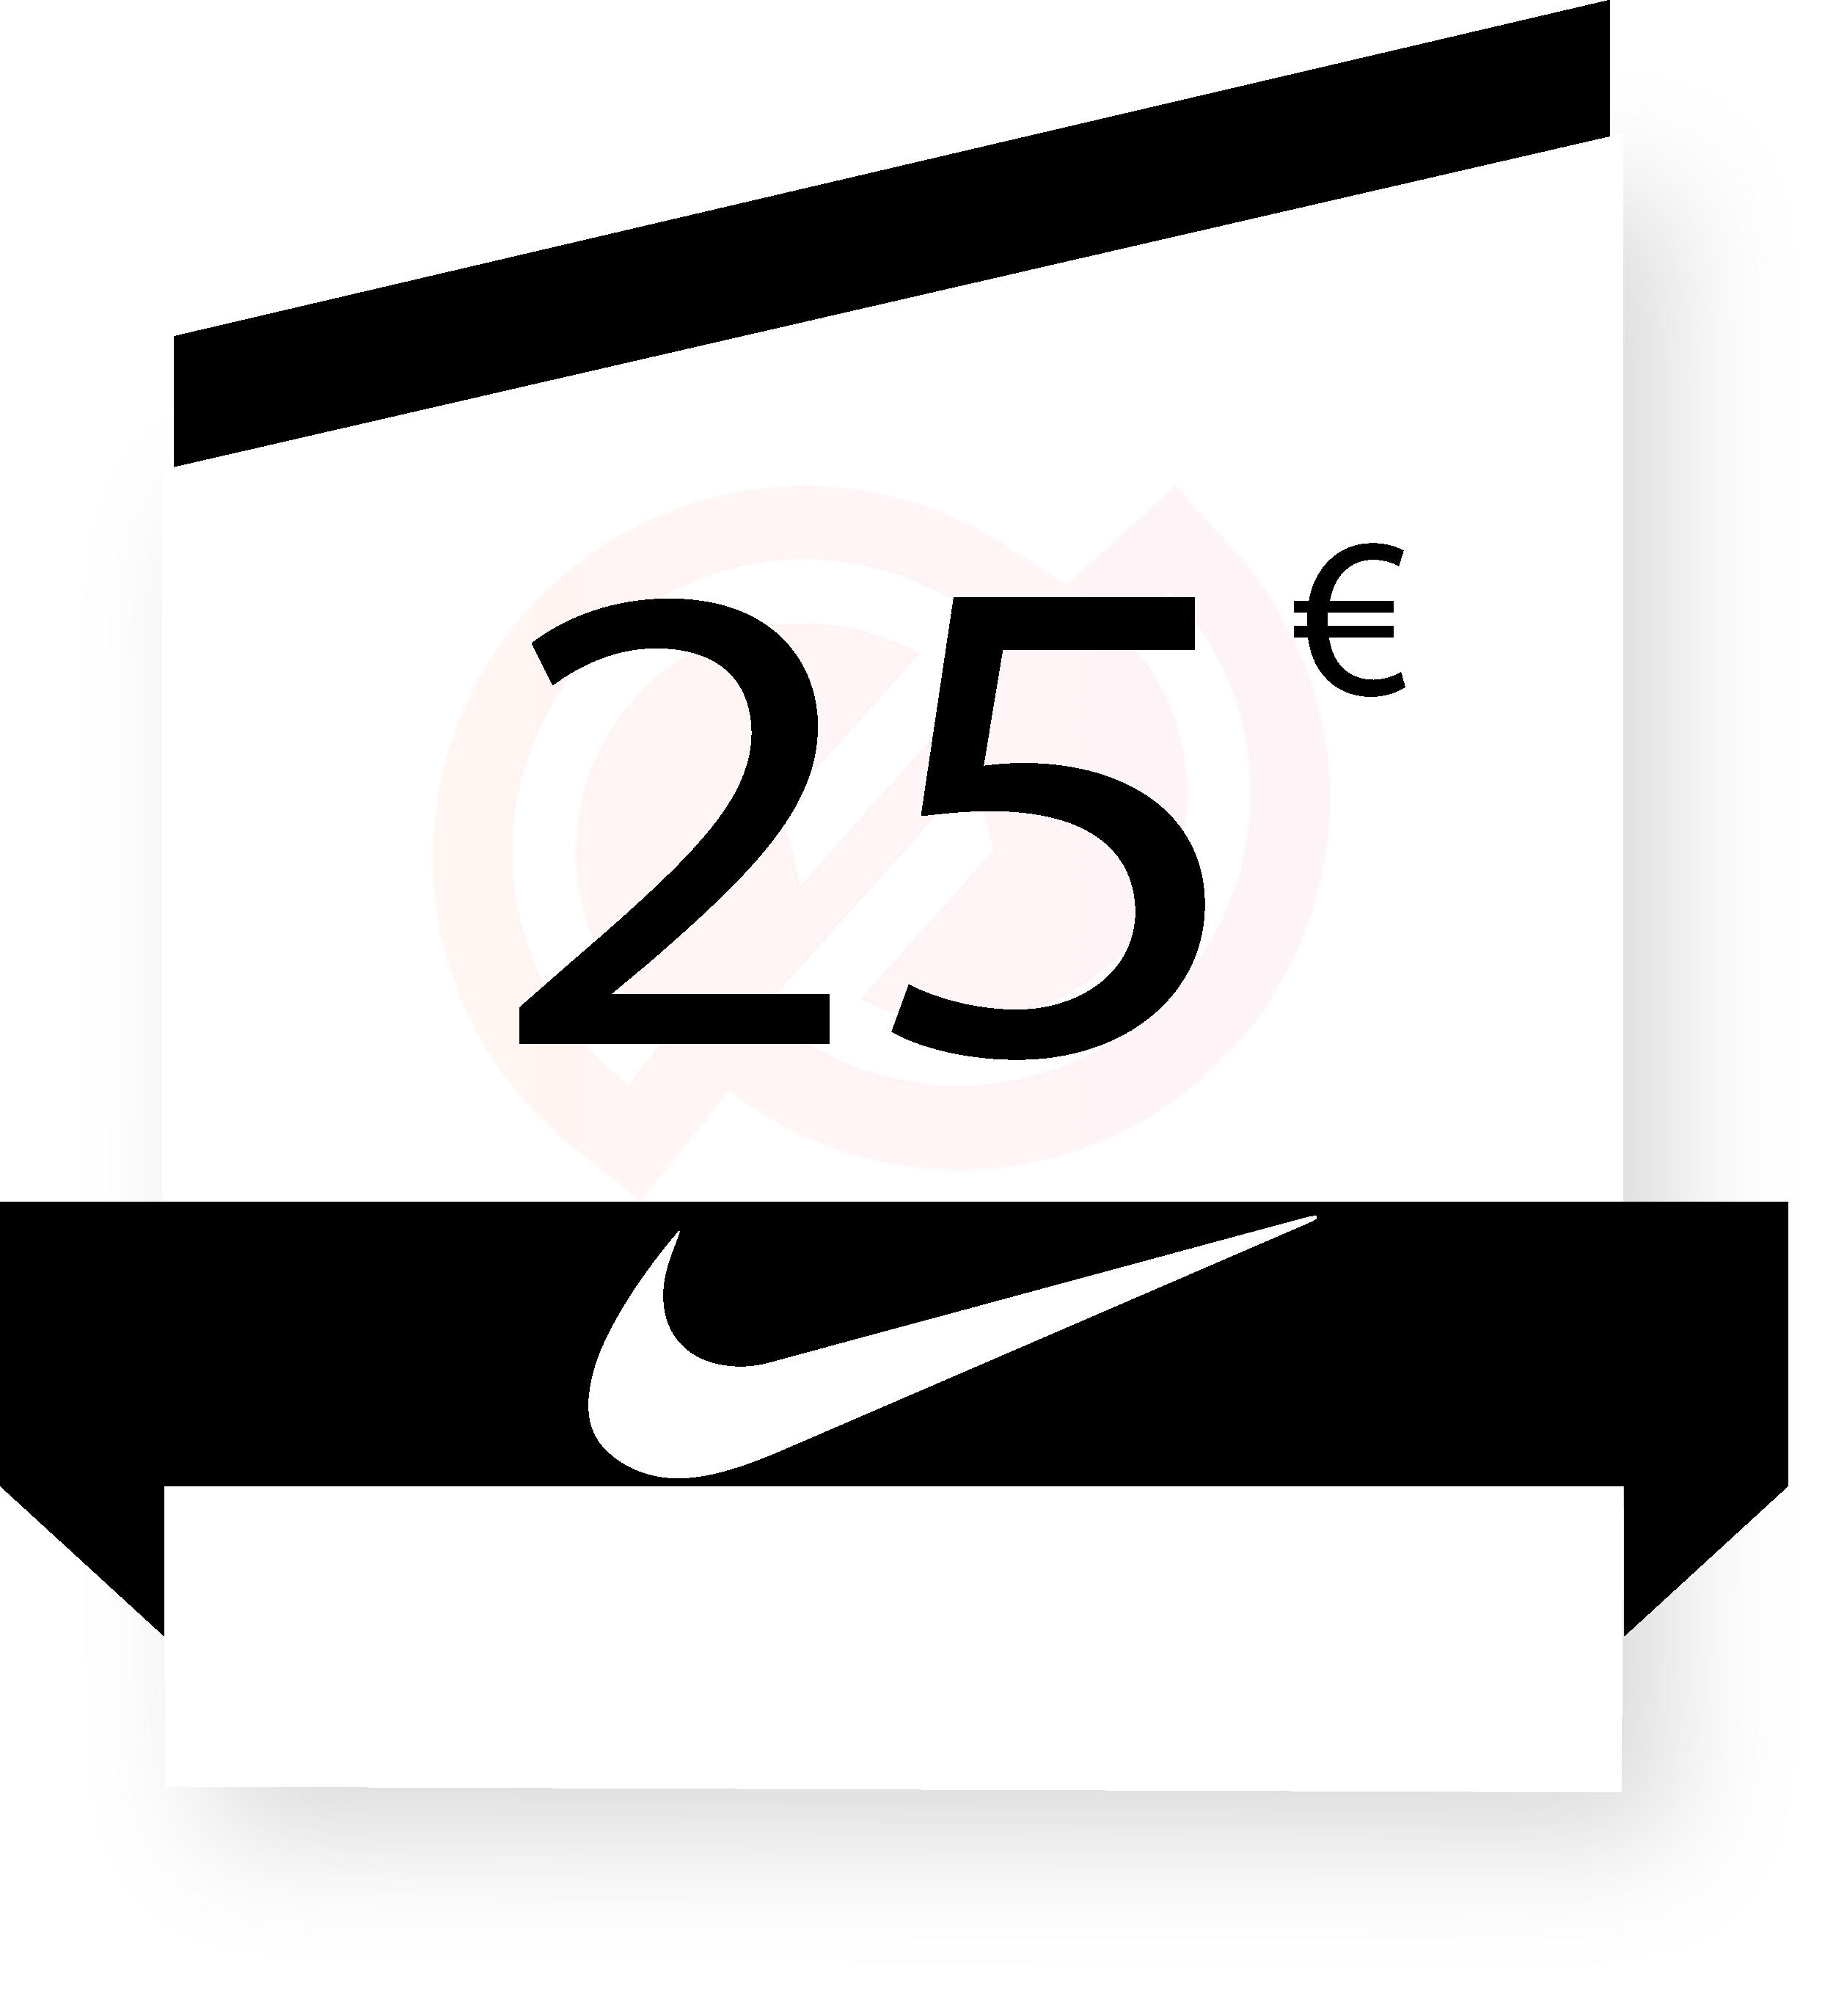 Nike 25€